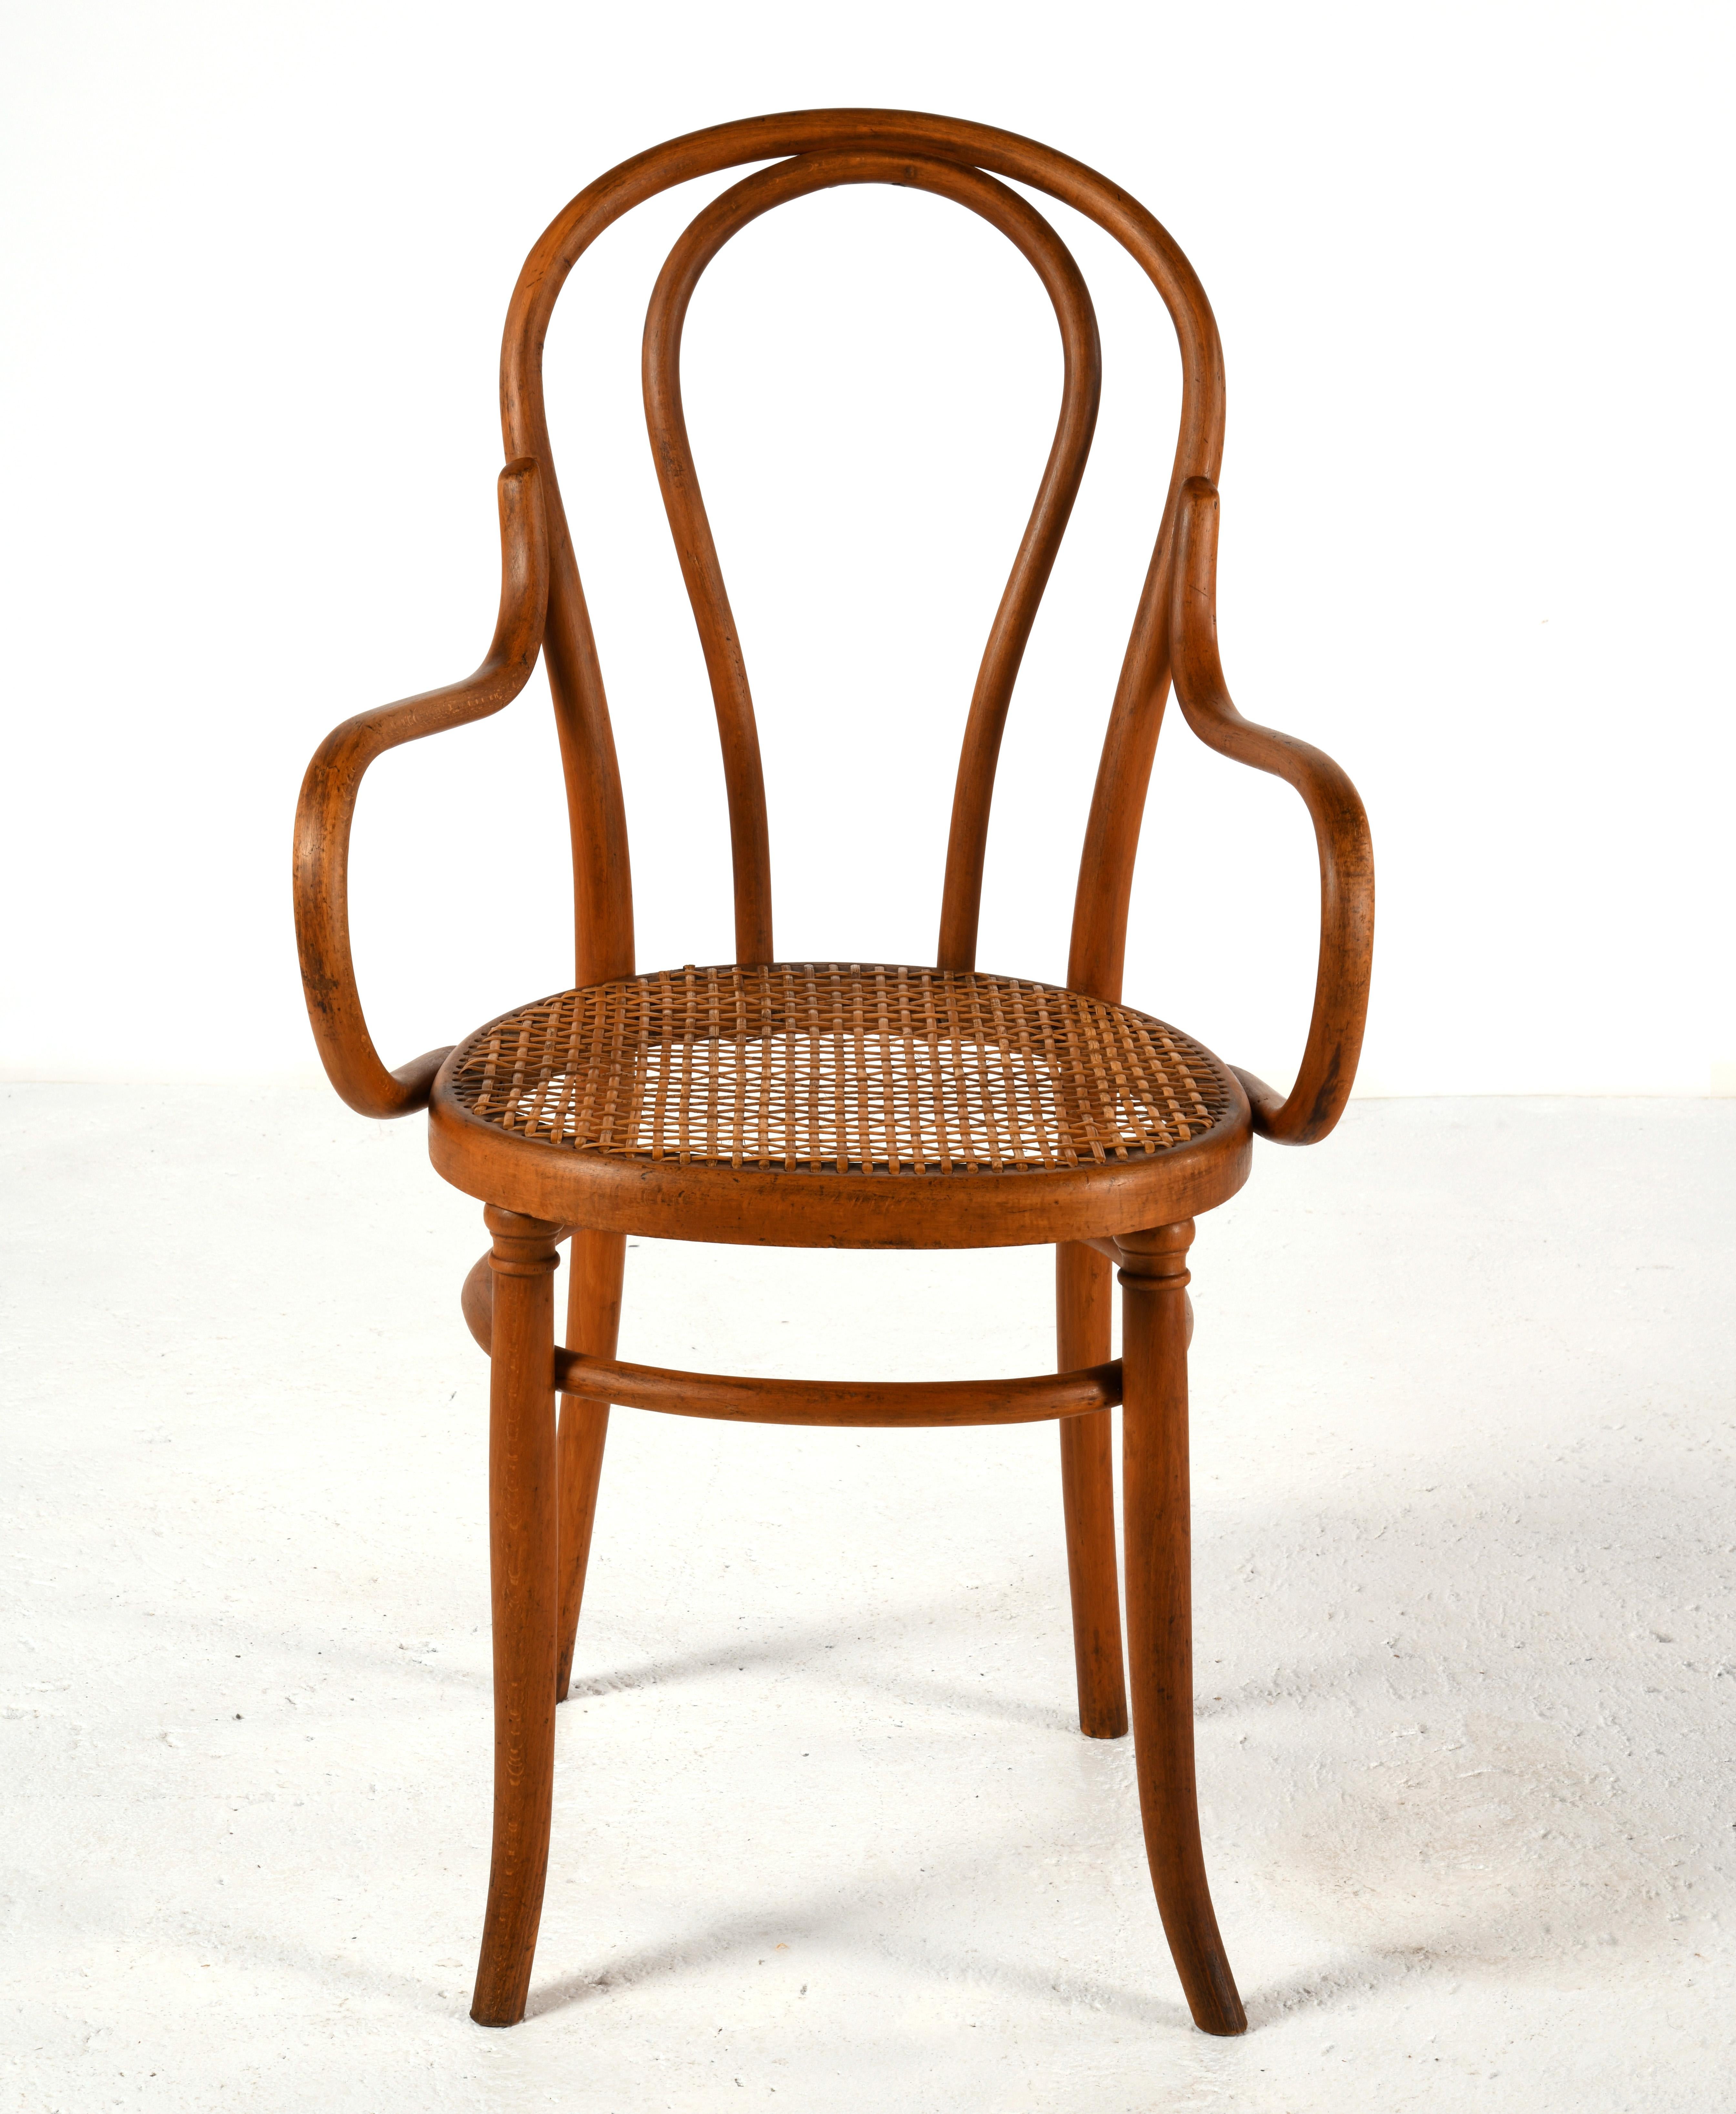 Fauteuil en bois courbé no. 18 produit par la société Fischel à Niemes (Bohemia) entre 1890 et 1910. Le bois est en bon état, de même que le cannage, qui est très différent du cannage habituel sur ce type de siège. Les sommets des pieds avant sont